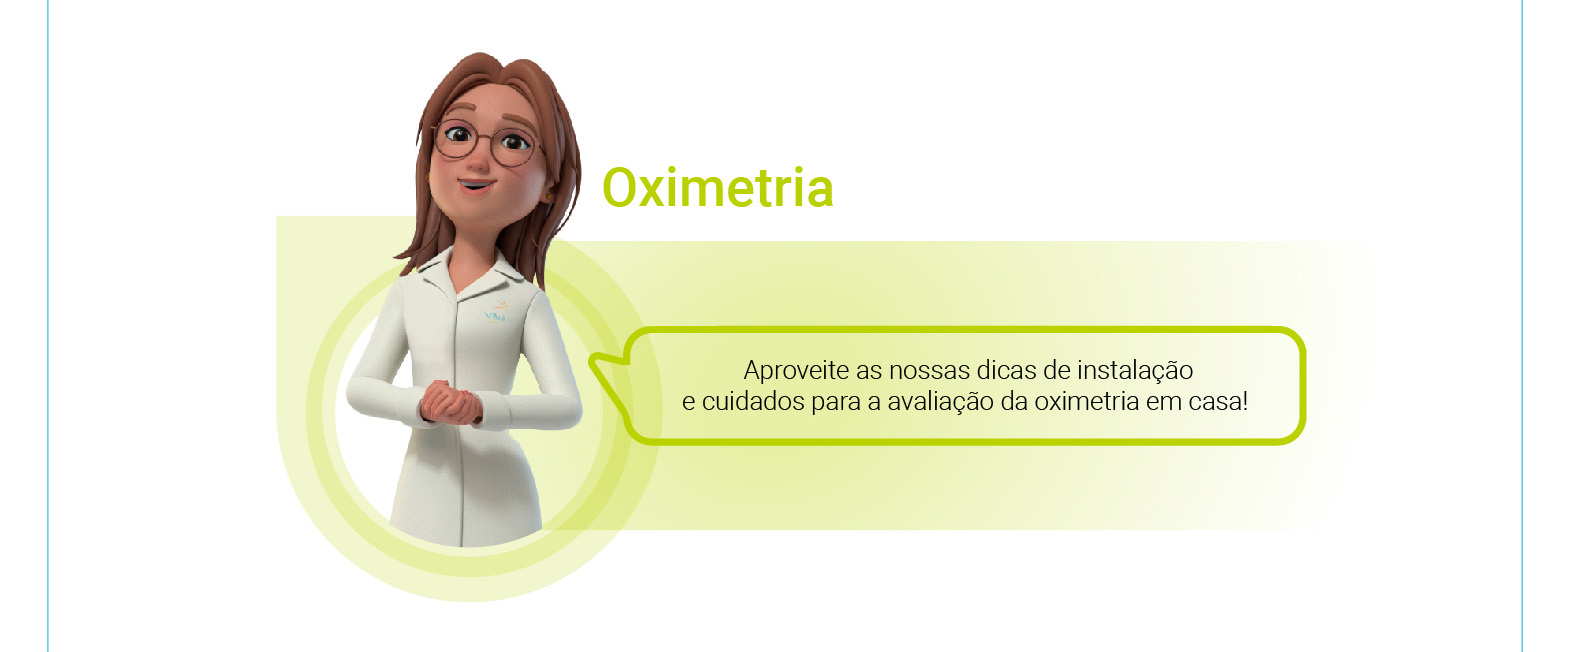 Oximetria: Aproveite as nossas dicas de instalação e cuidados para a avaliação da oximetria em casa!